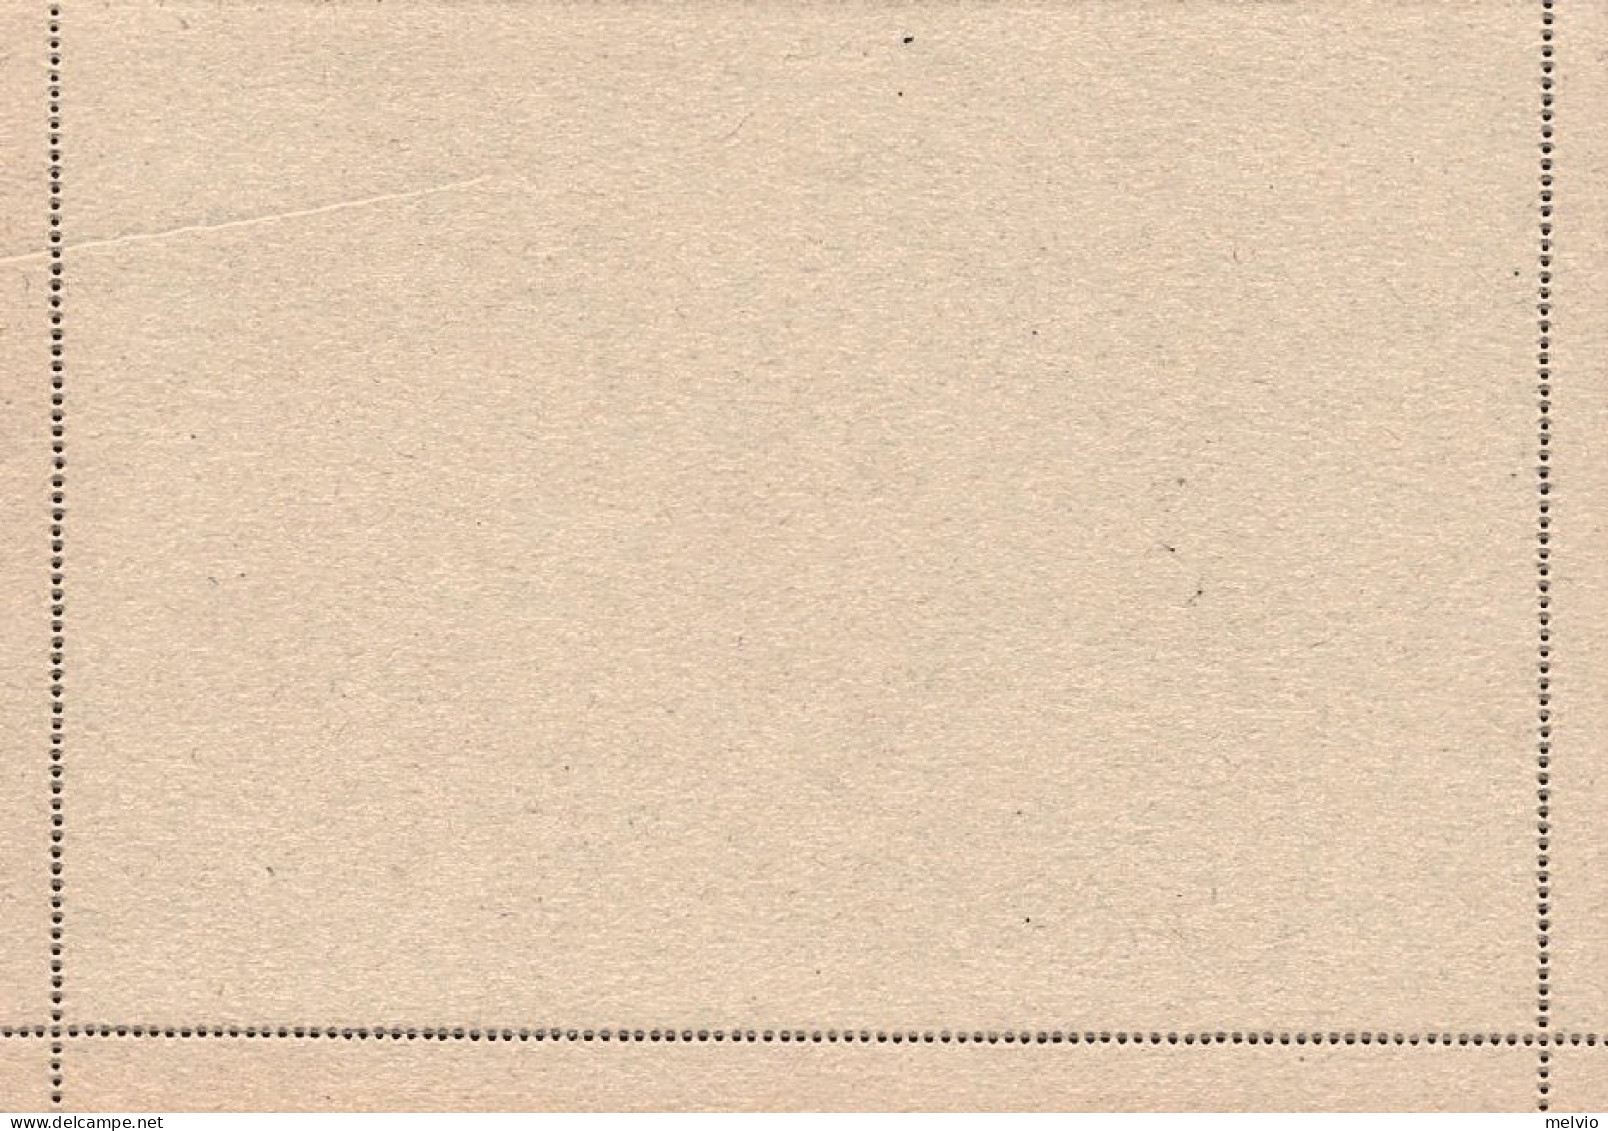 1944-RSI Biglietto Postale 25c. Monumenti Distrutti Nuovo - Stamped Stationery